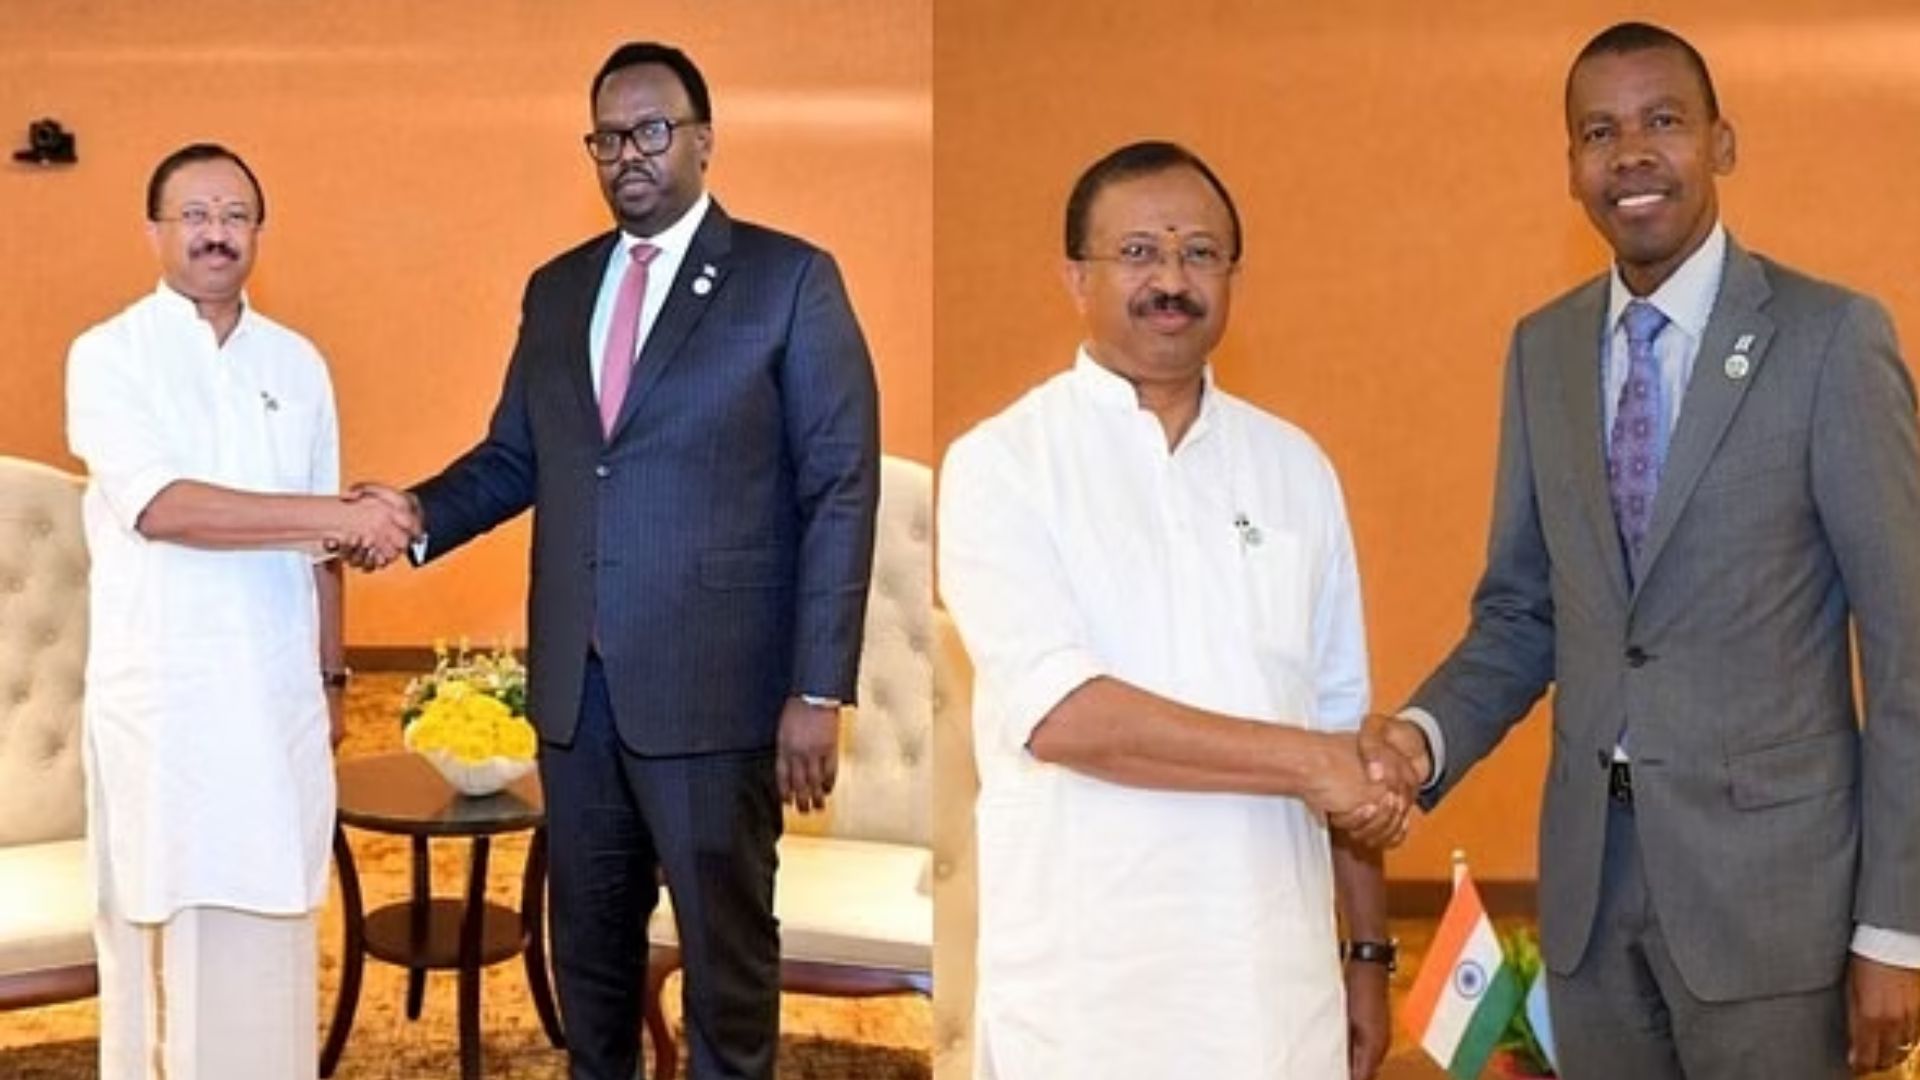 Third South Summit: MoS V Mureleedharan communicates with Indian diaspora in Uganda